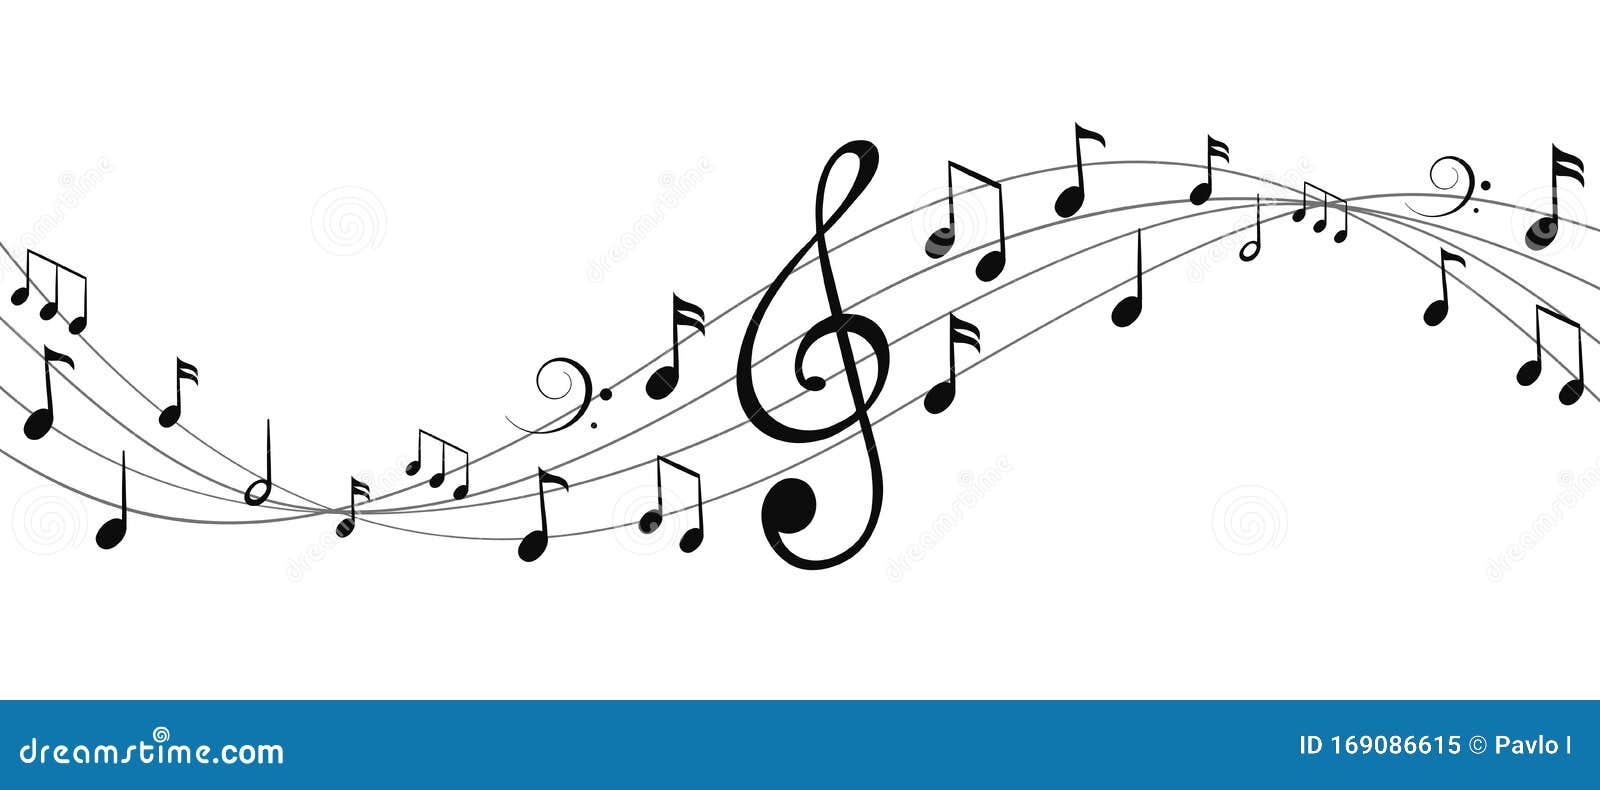 音乐音符波隔 群音符背景 矢量向量例证 插画包括有文化 附注 图标 背包 艺术 音乐